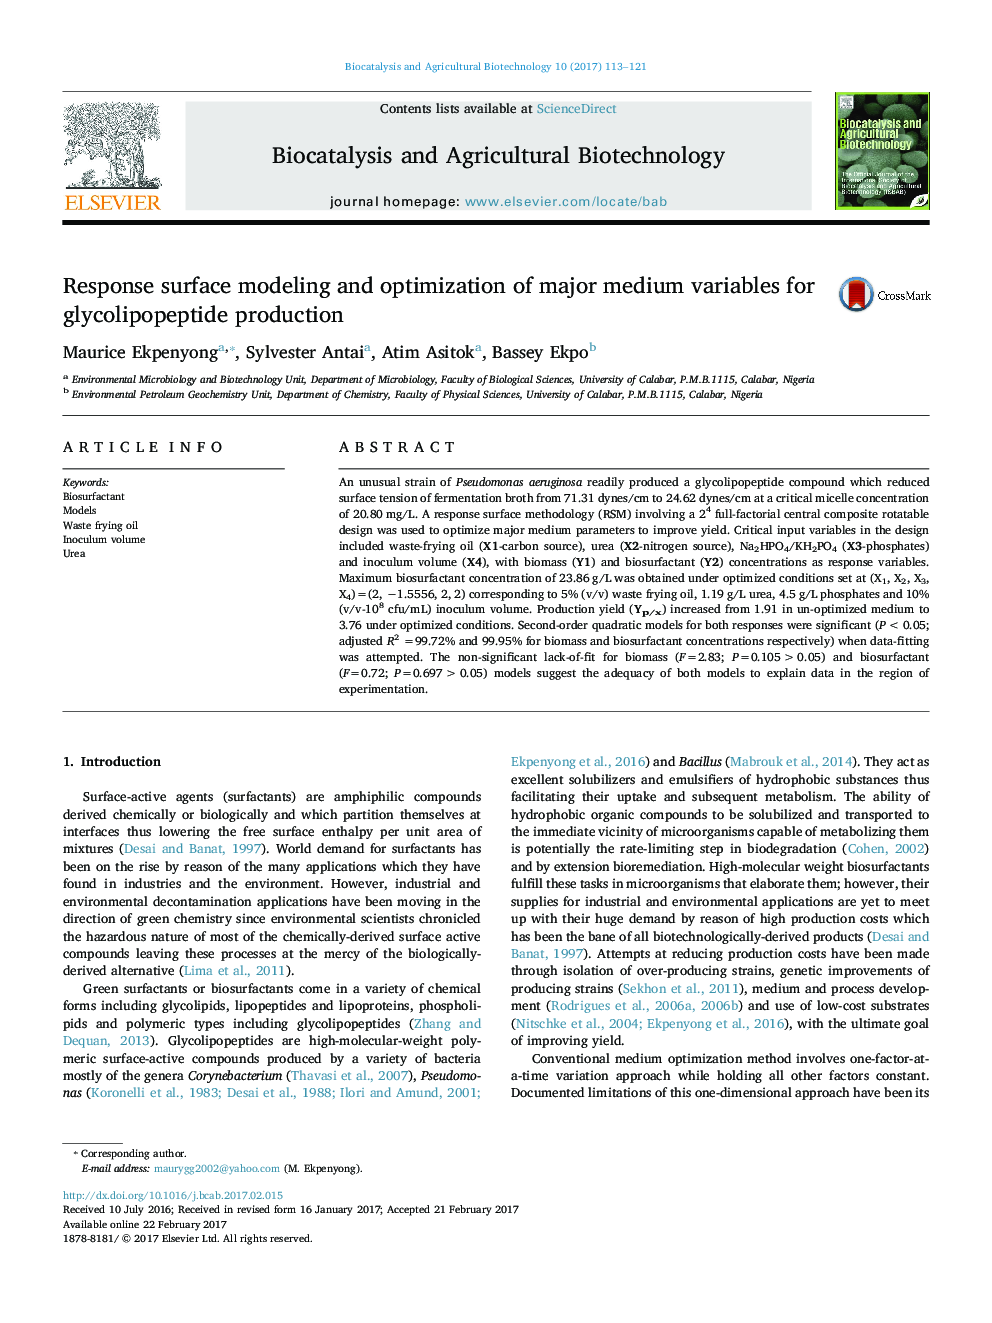 مدل سازی واکنش سطحی و بهینه سازی متغیرهای اصلی برای تولید گلیکوالیپوپتید 